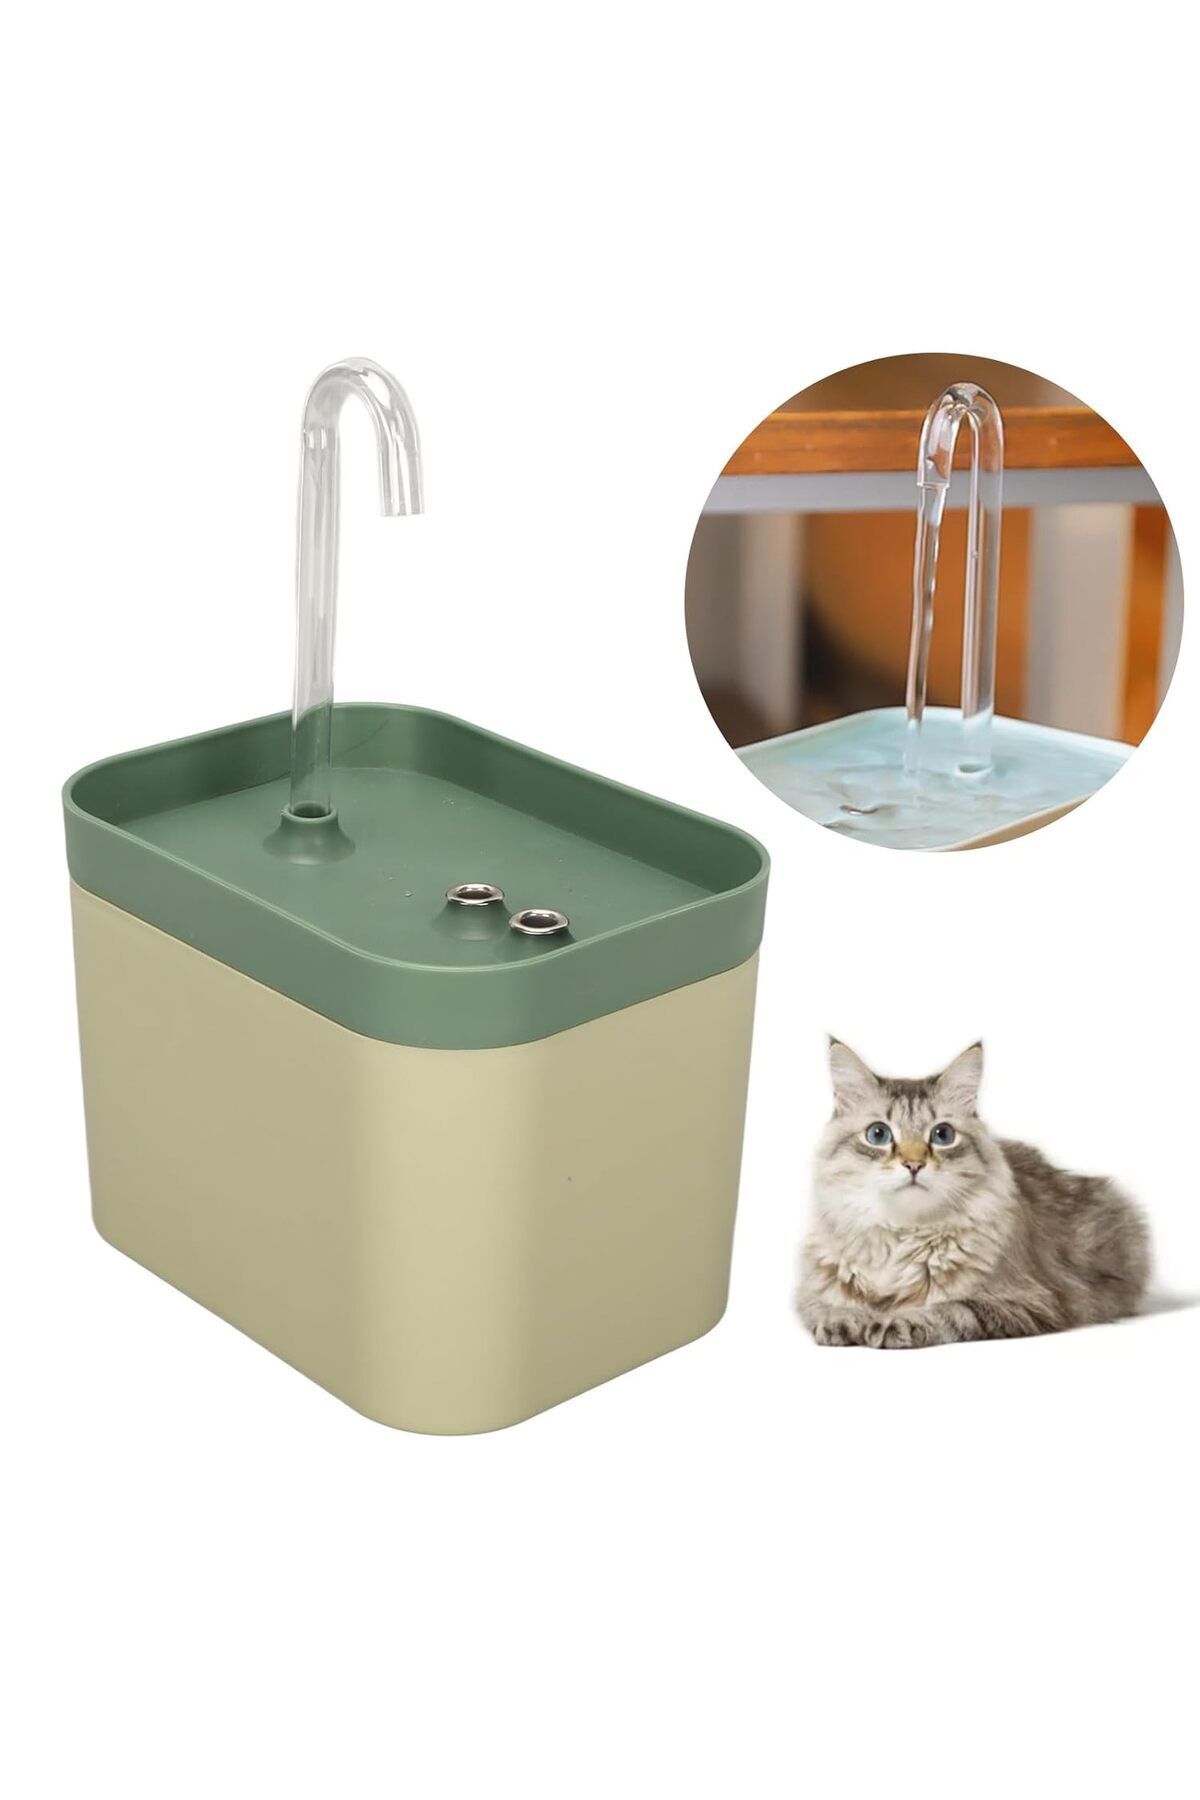 Kamardey Kedi Köpek Için Otomatik Su Pınarı Su Çeşmesi Su Sebili 1.5 Lt Usb İle çalışır